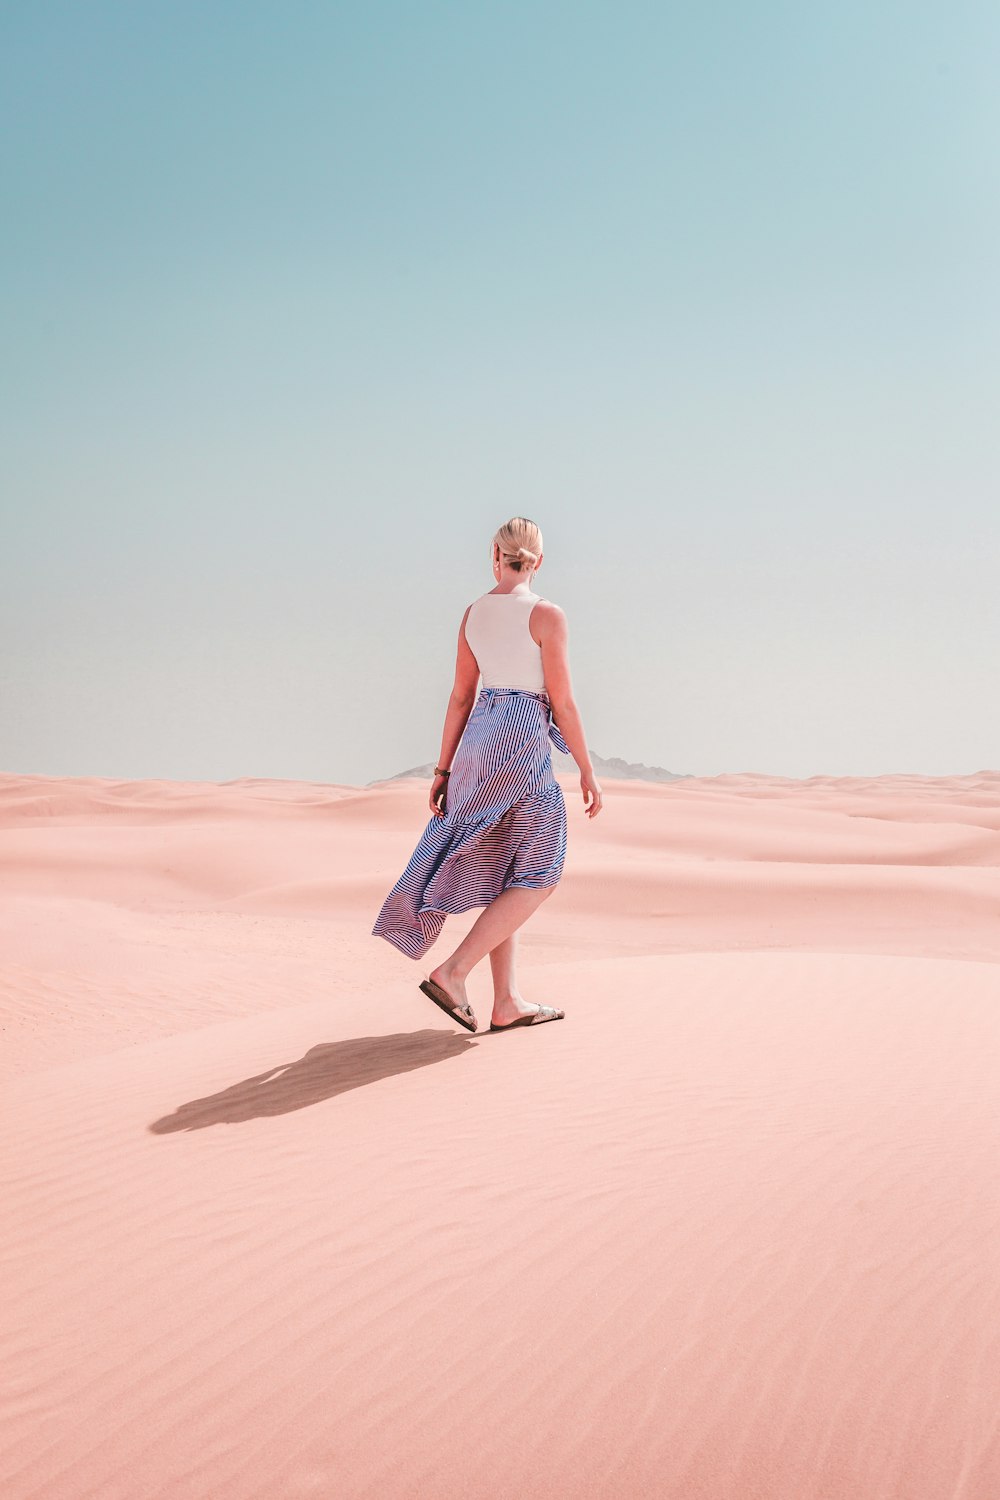 La mujer lleva vestido camina por el desierto durante el día